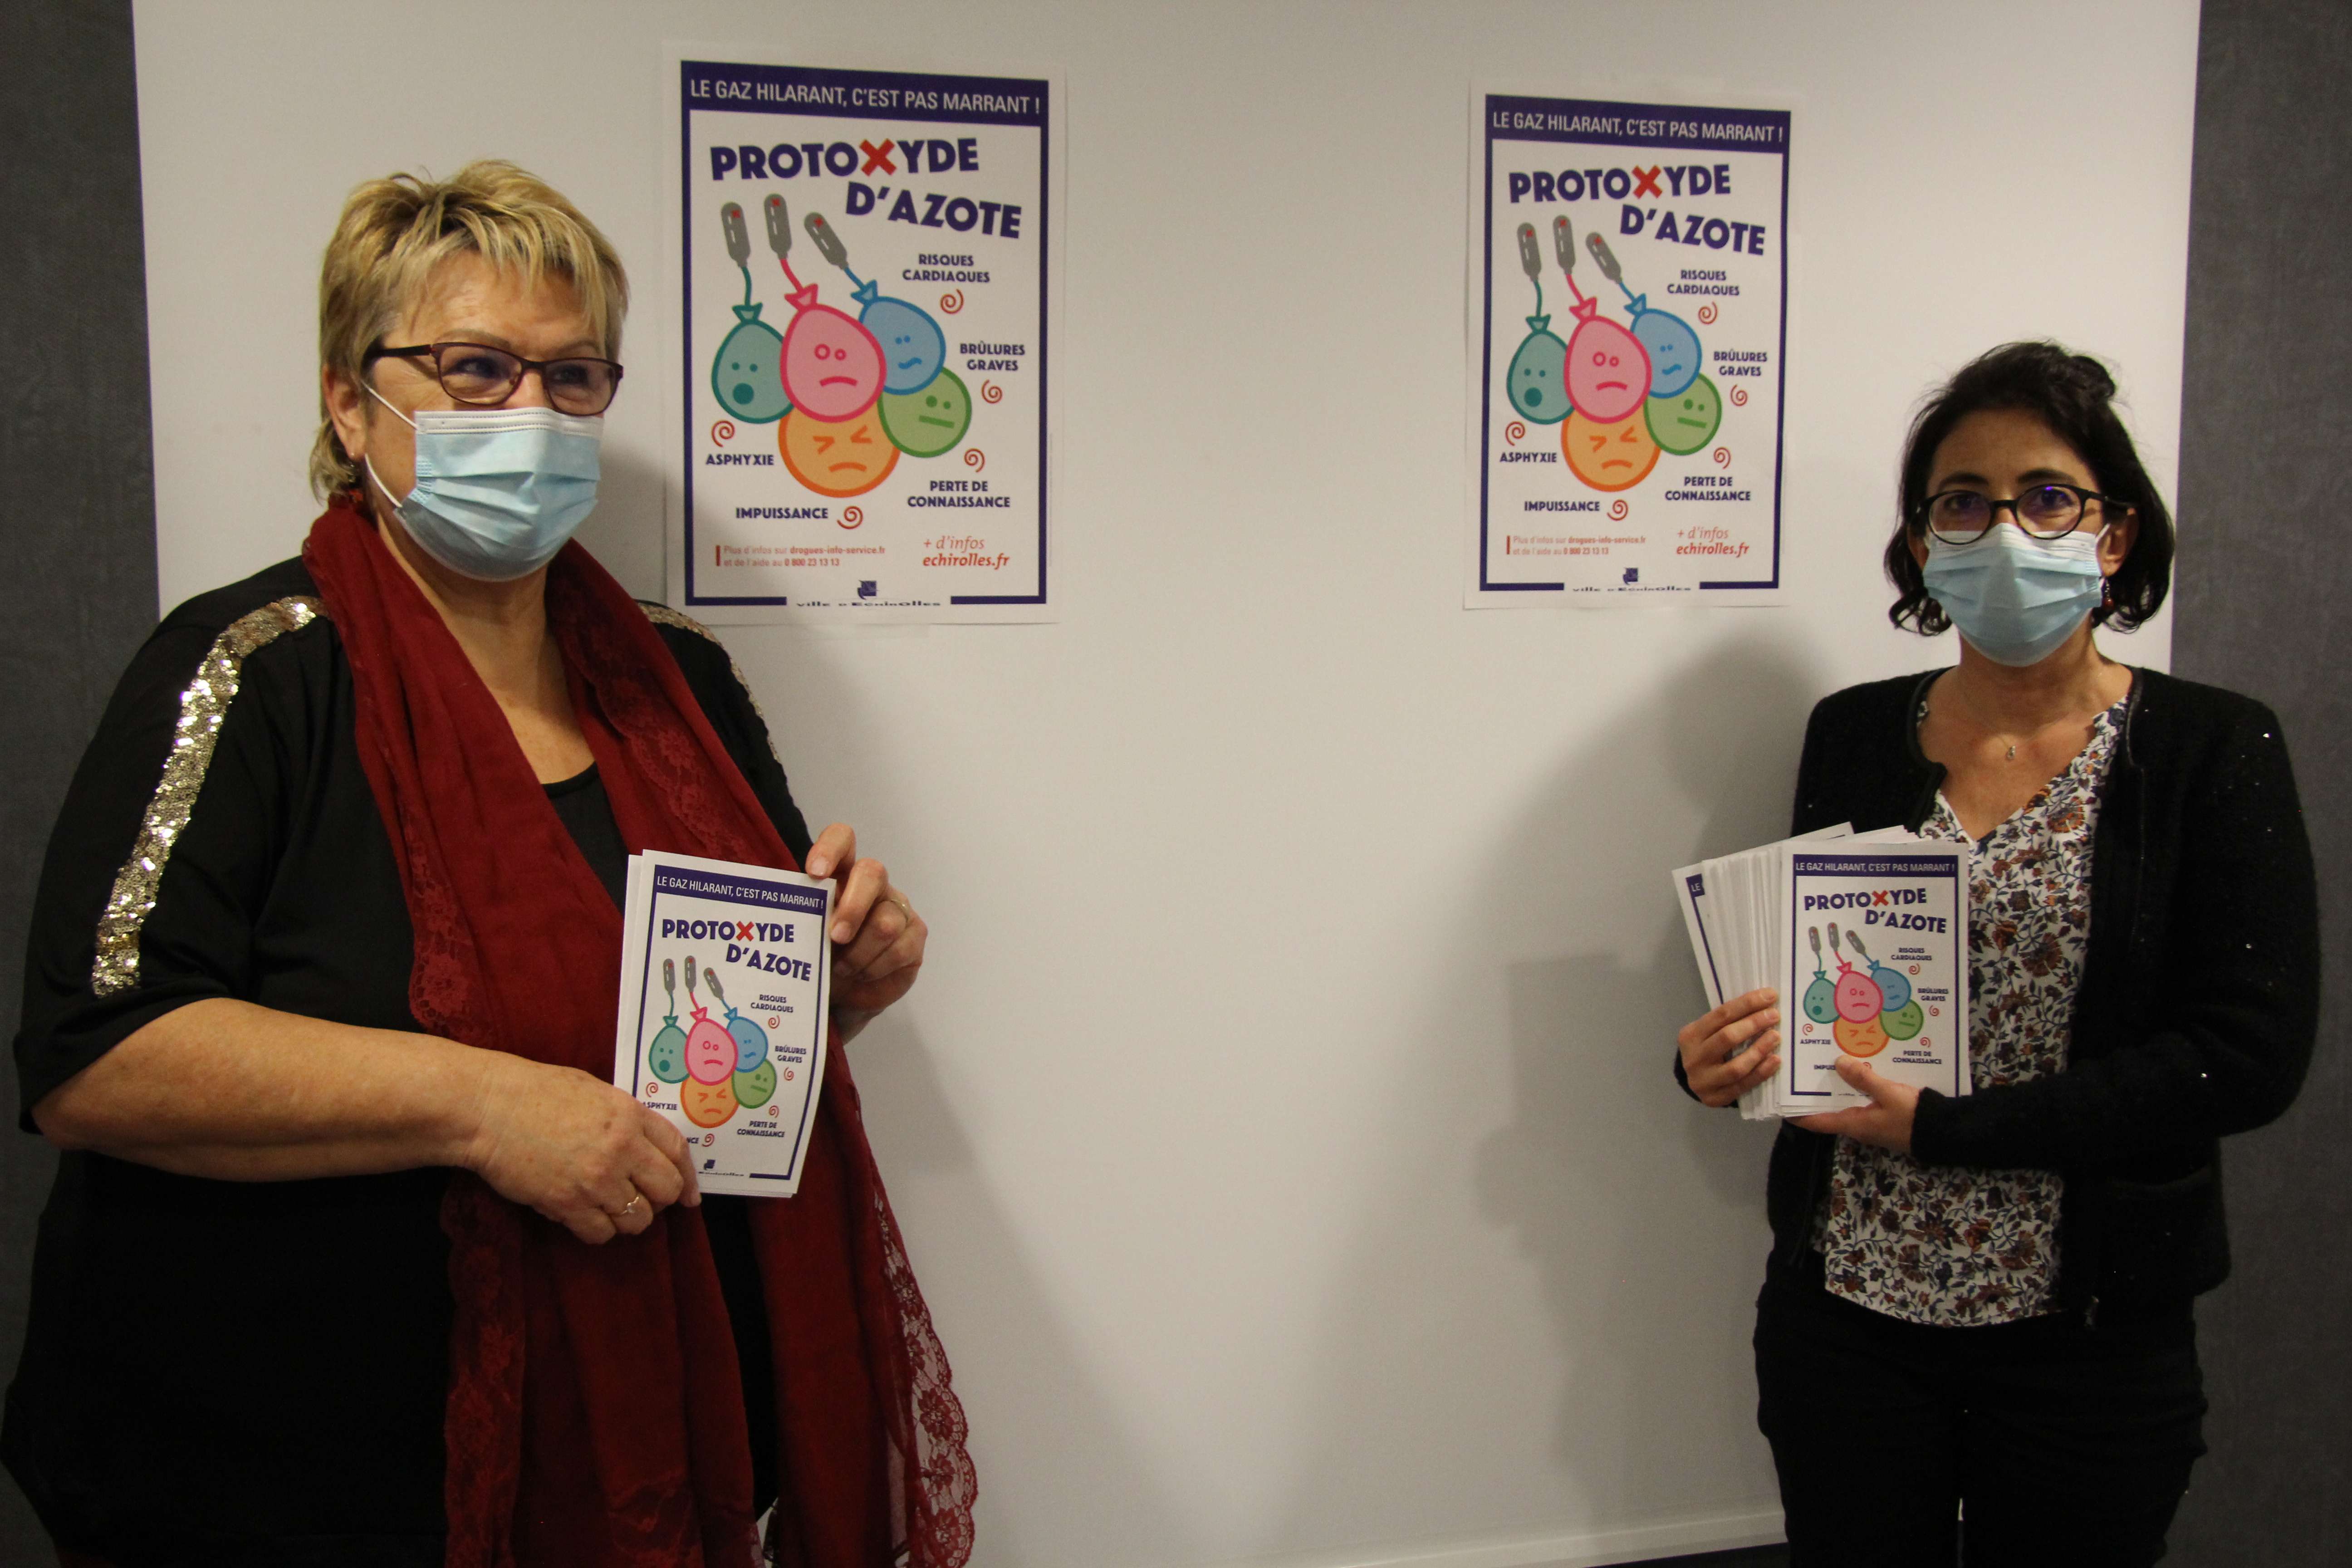 Les adjointes Sylvette Rochas et Amandine Demore posent à côté des affiches et flyers relayant la campagne de sensibilisation sur le protoxyde d'azote.